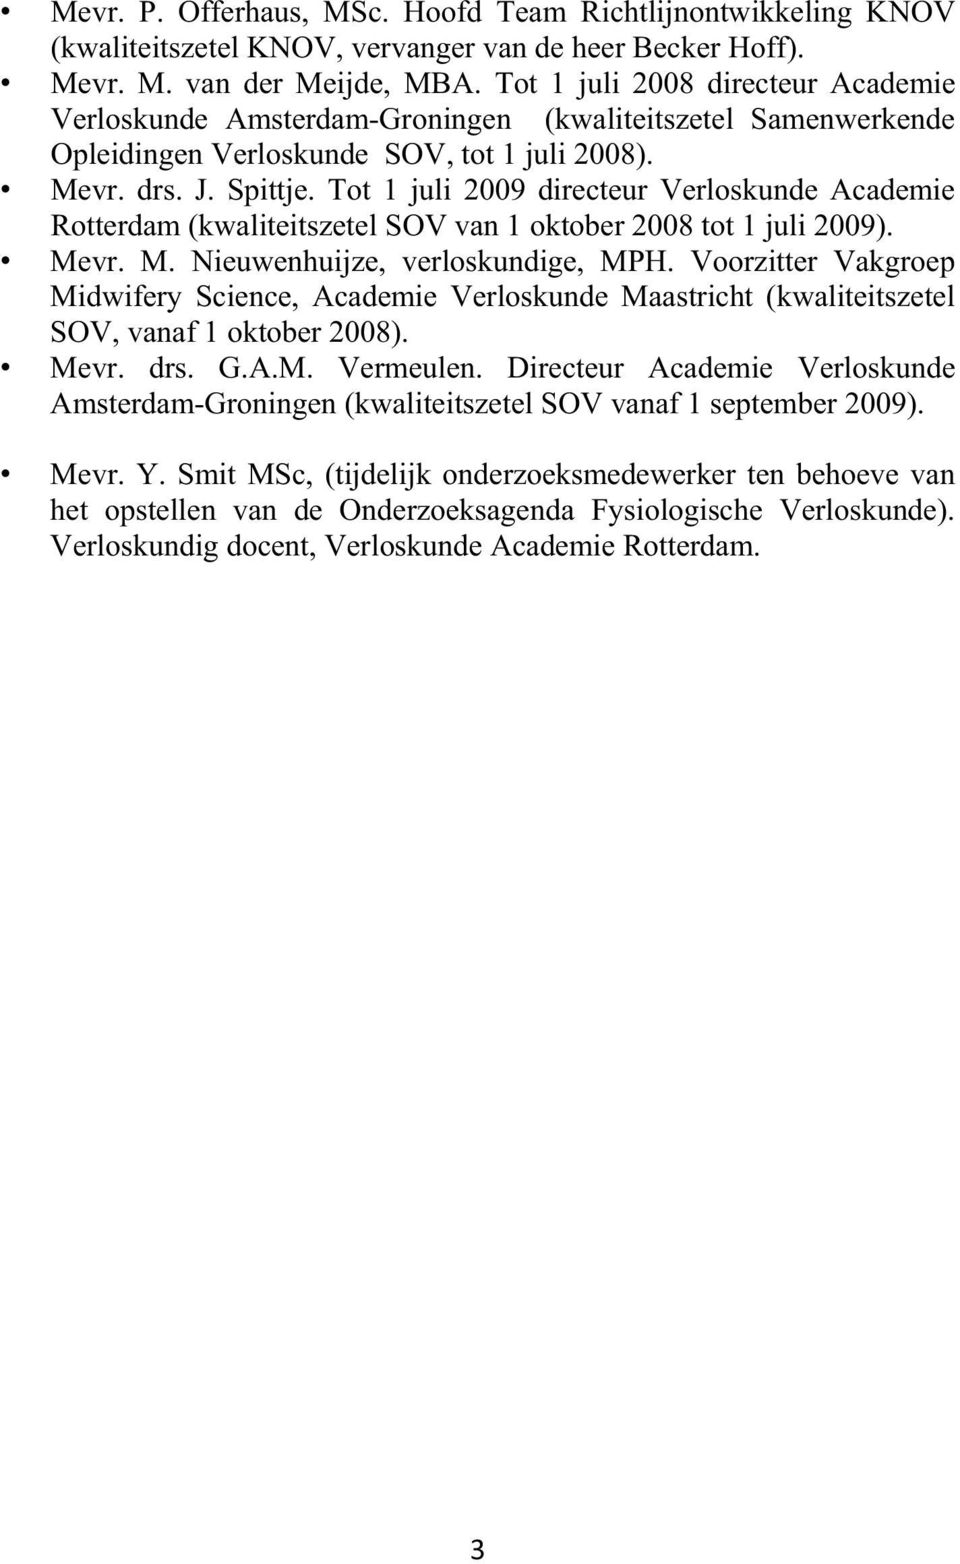 Tot 1 juli 2009 directeur Verloskunde Academie Rotterdam (kwaliteitszetel SOV van 1 oktober 2008 tot 1 juli 2009). Mevr. M. Nieuwenhuijze, verloskundige, MPH.